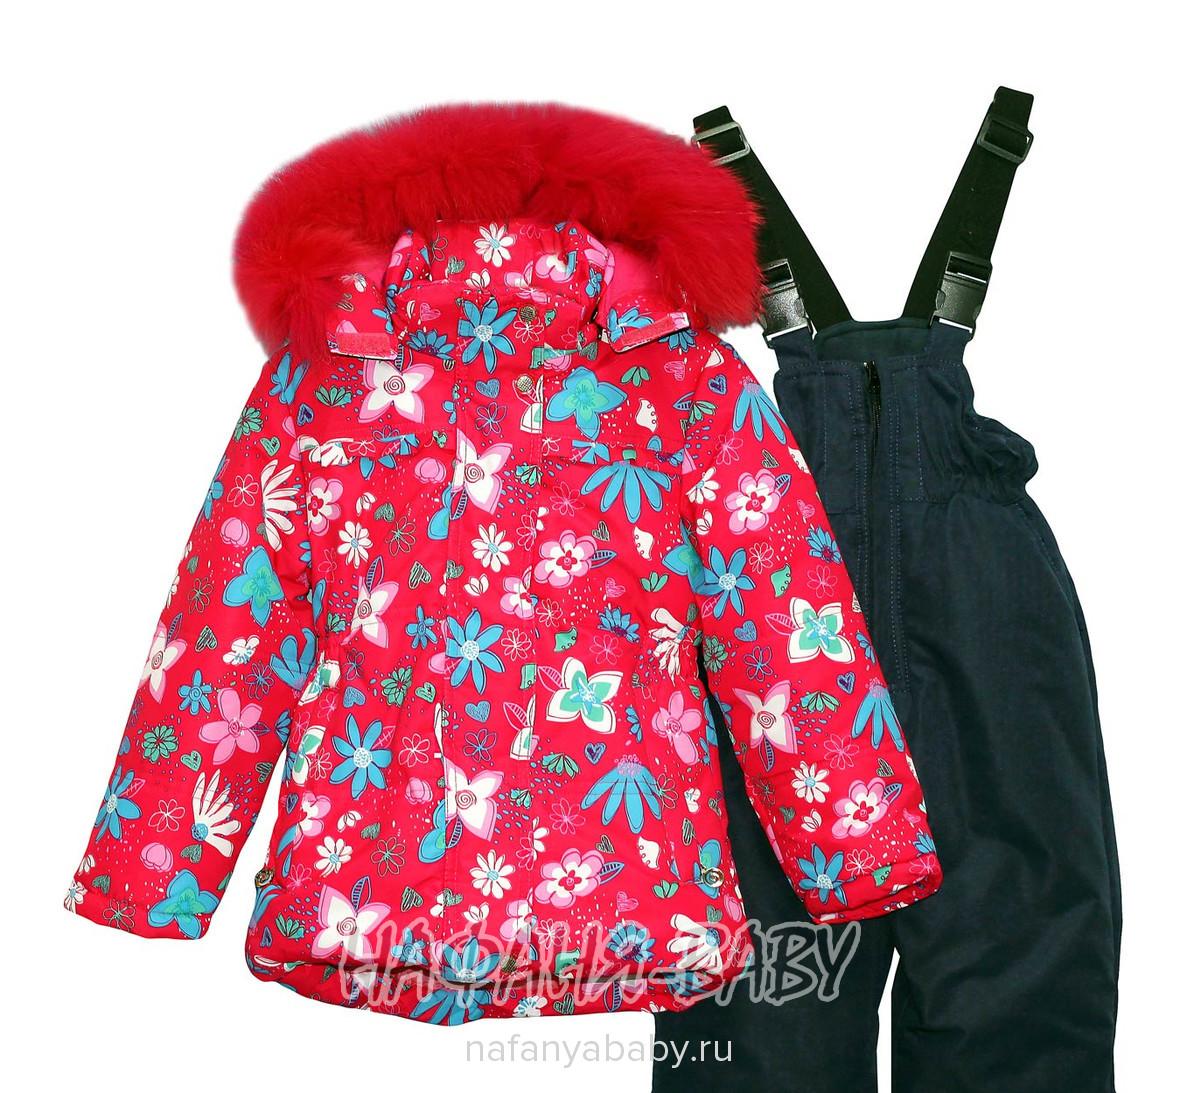 Зимний костюм для девочки YIKAI арт: 1816, 5-9 лет, 1-4 года, оптом Китай (Пекин)